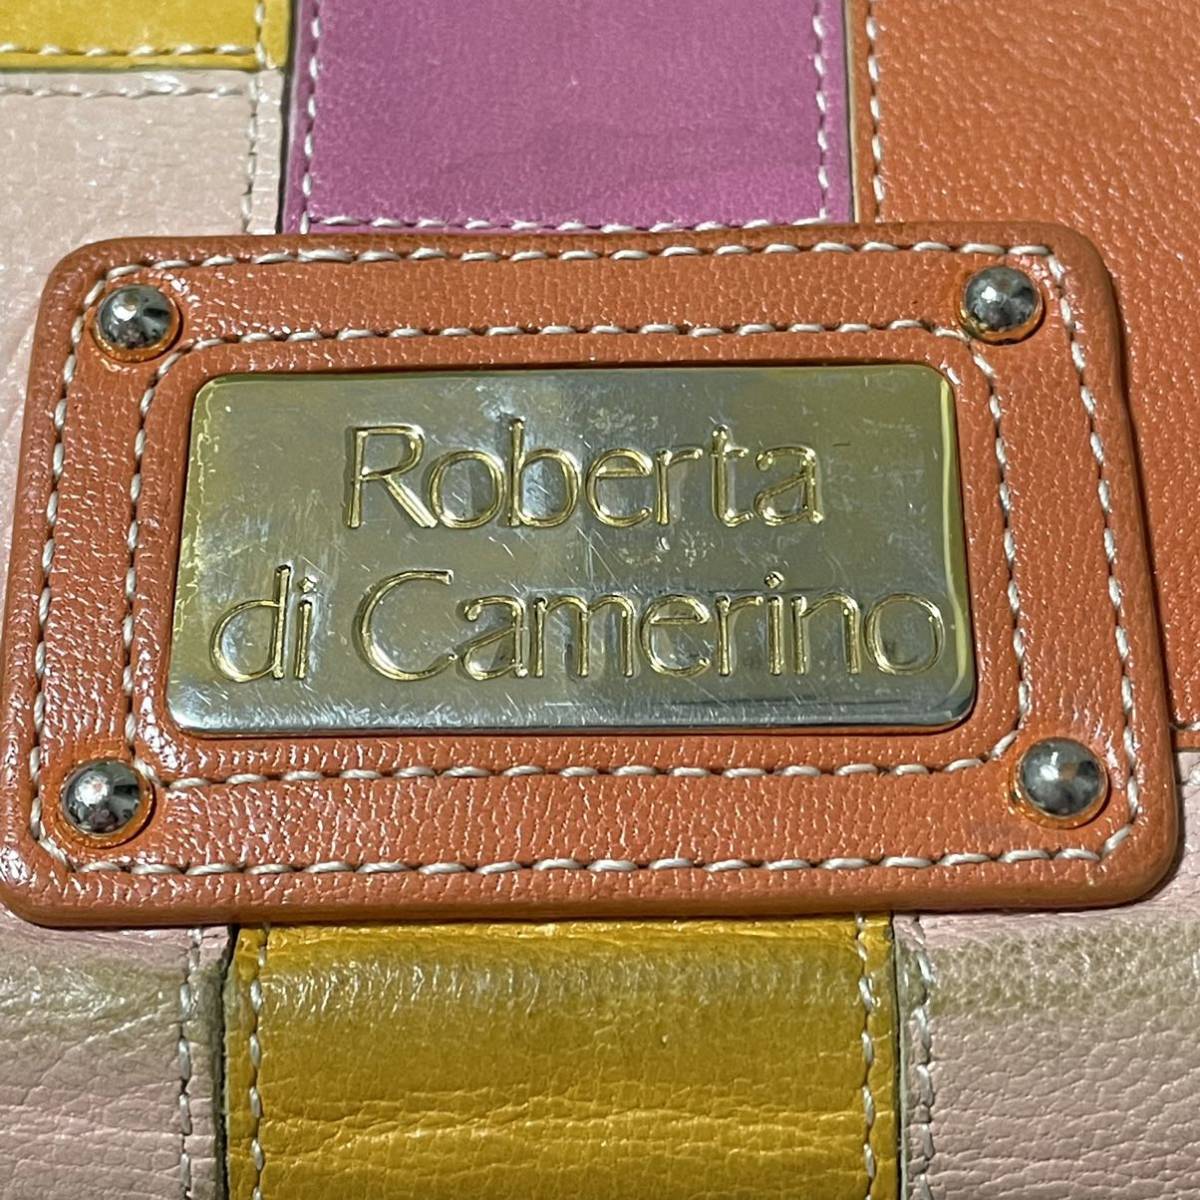 Roberta di Camerine Roberta di Camerino long wallet leather long wallet 